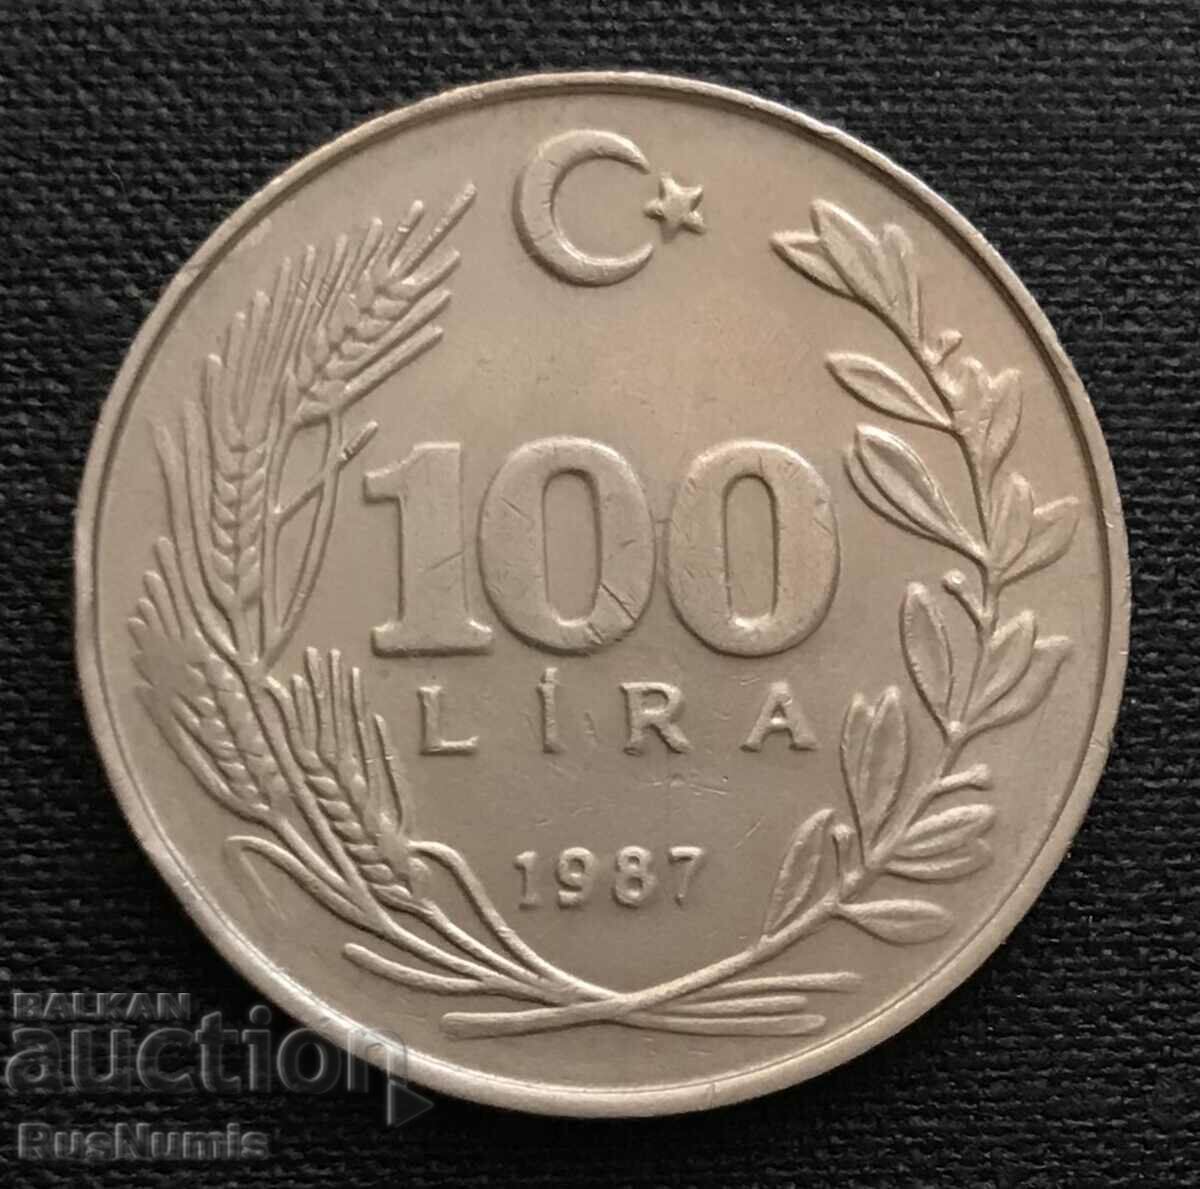 Turkey. 100 pounds 1987